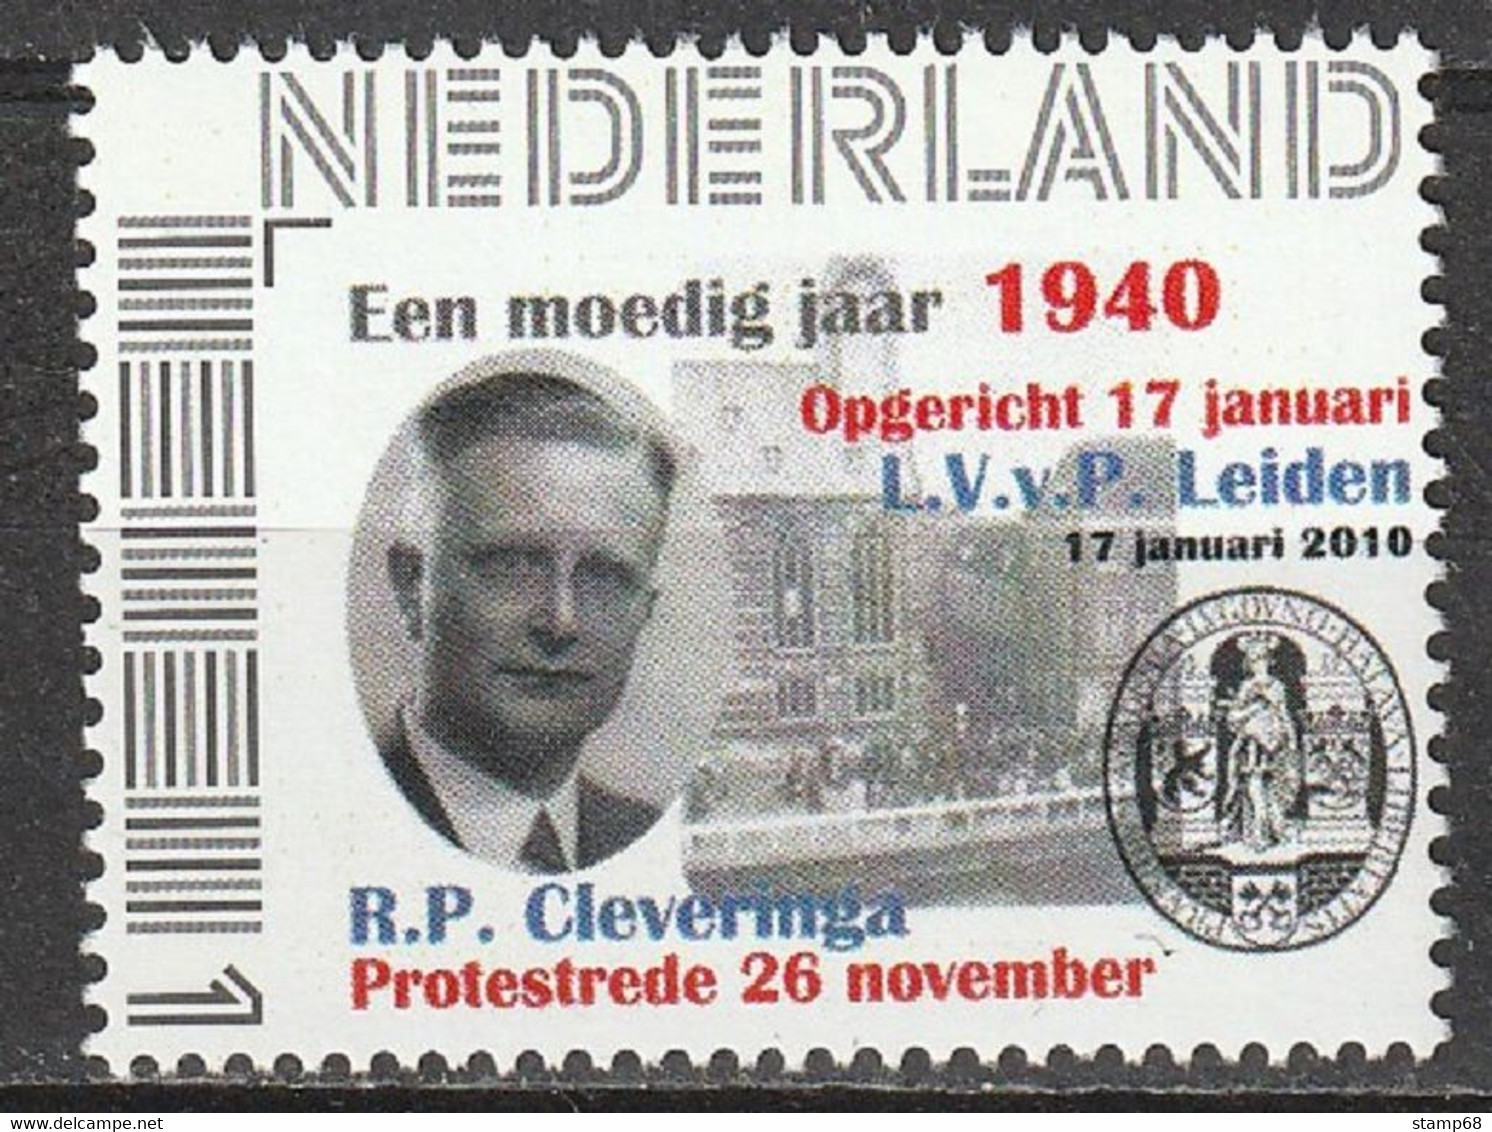 Nederland NVPH 2751 Persoonlijke Zegels Protestrede Cleveringa Oprichting LvVP Leiden 1940-2010 MNH Postfris - Sellos Privados